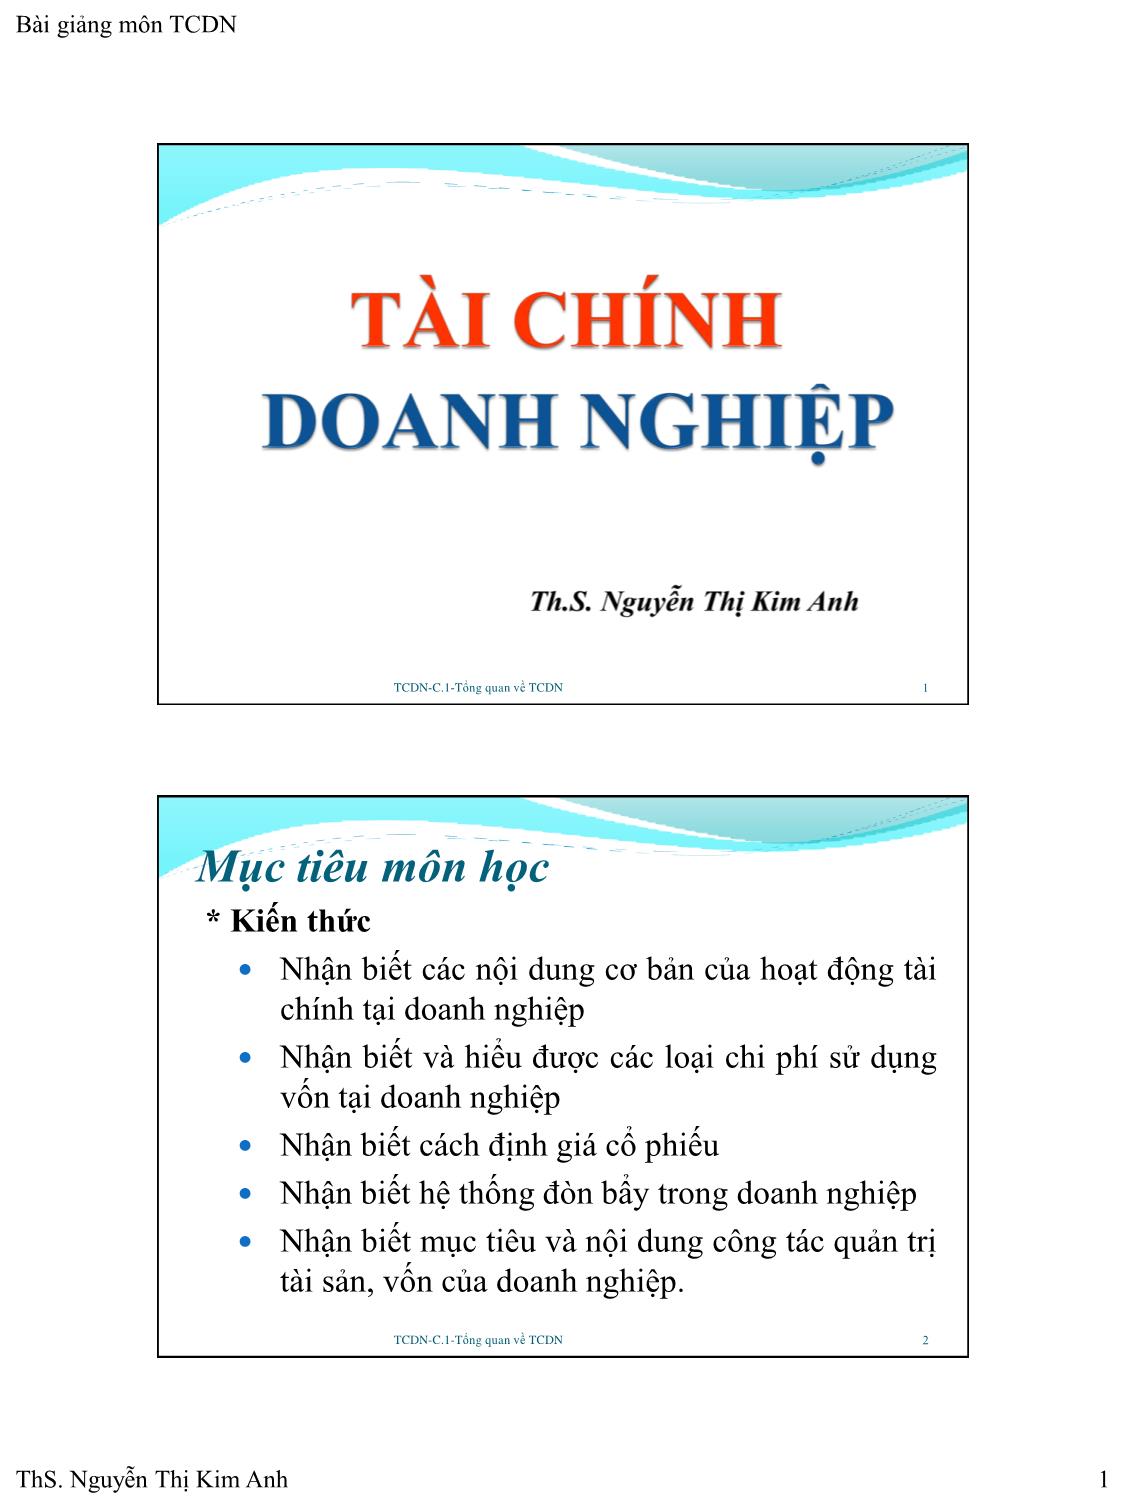 Bài giảng Tài chính doanh nghiệp - Chương 1: Tổng quan về tài chính doanh nghiệp - Nguyễn Thị Kim Anh trang 1